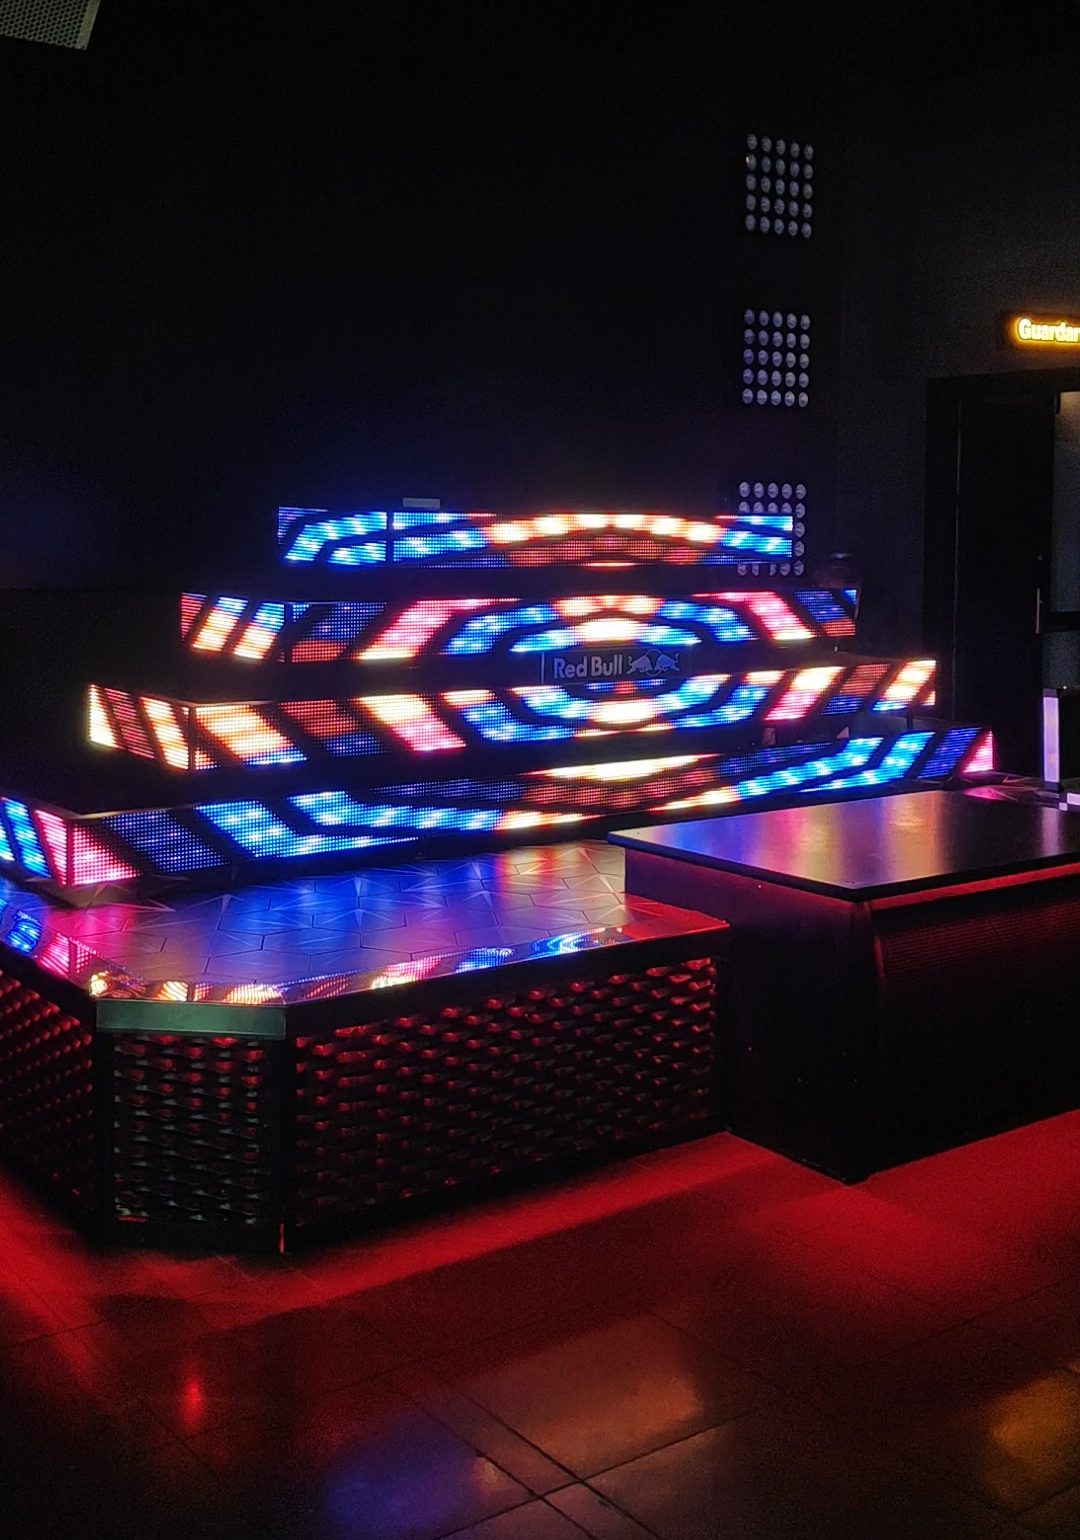 Mesa de DJ formada por varias tiras de pantalla led. Tiene forma de pirámide y se reproduce un vídeo con mucho colorido.